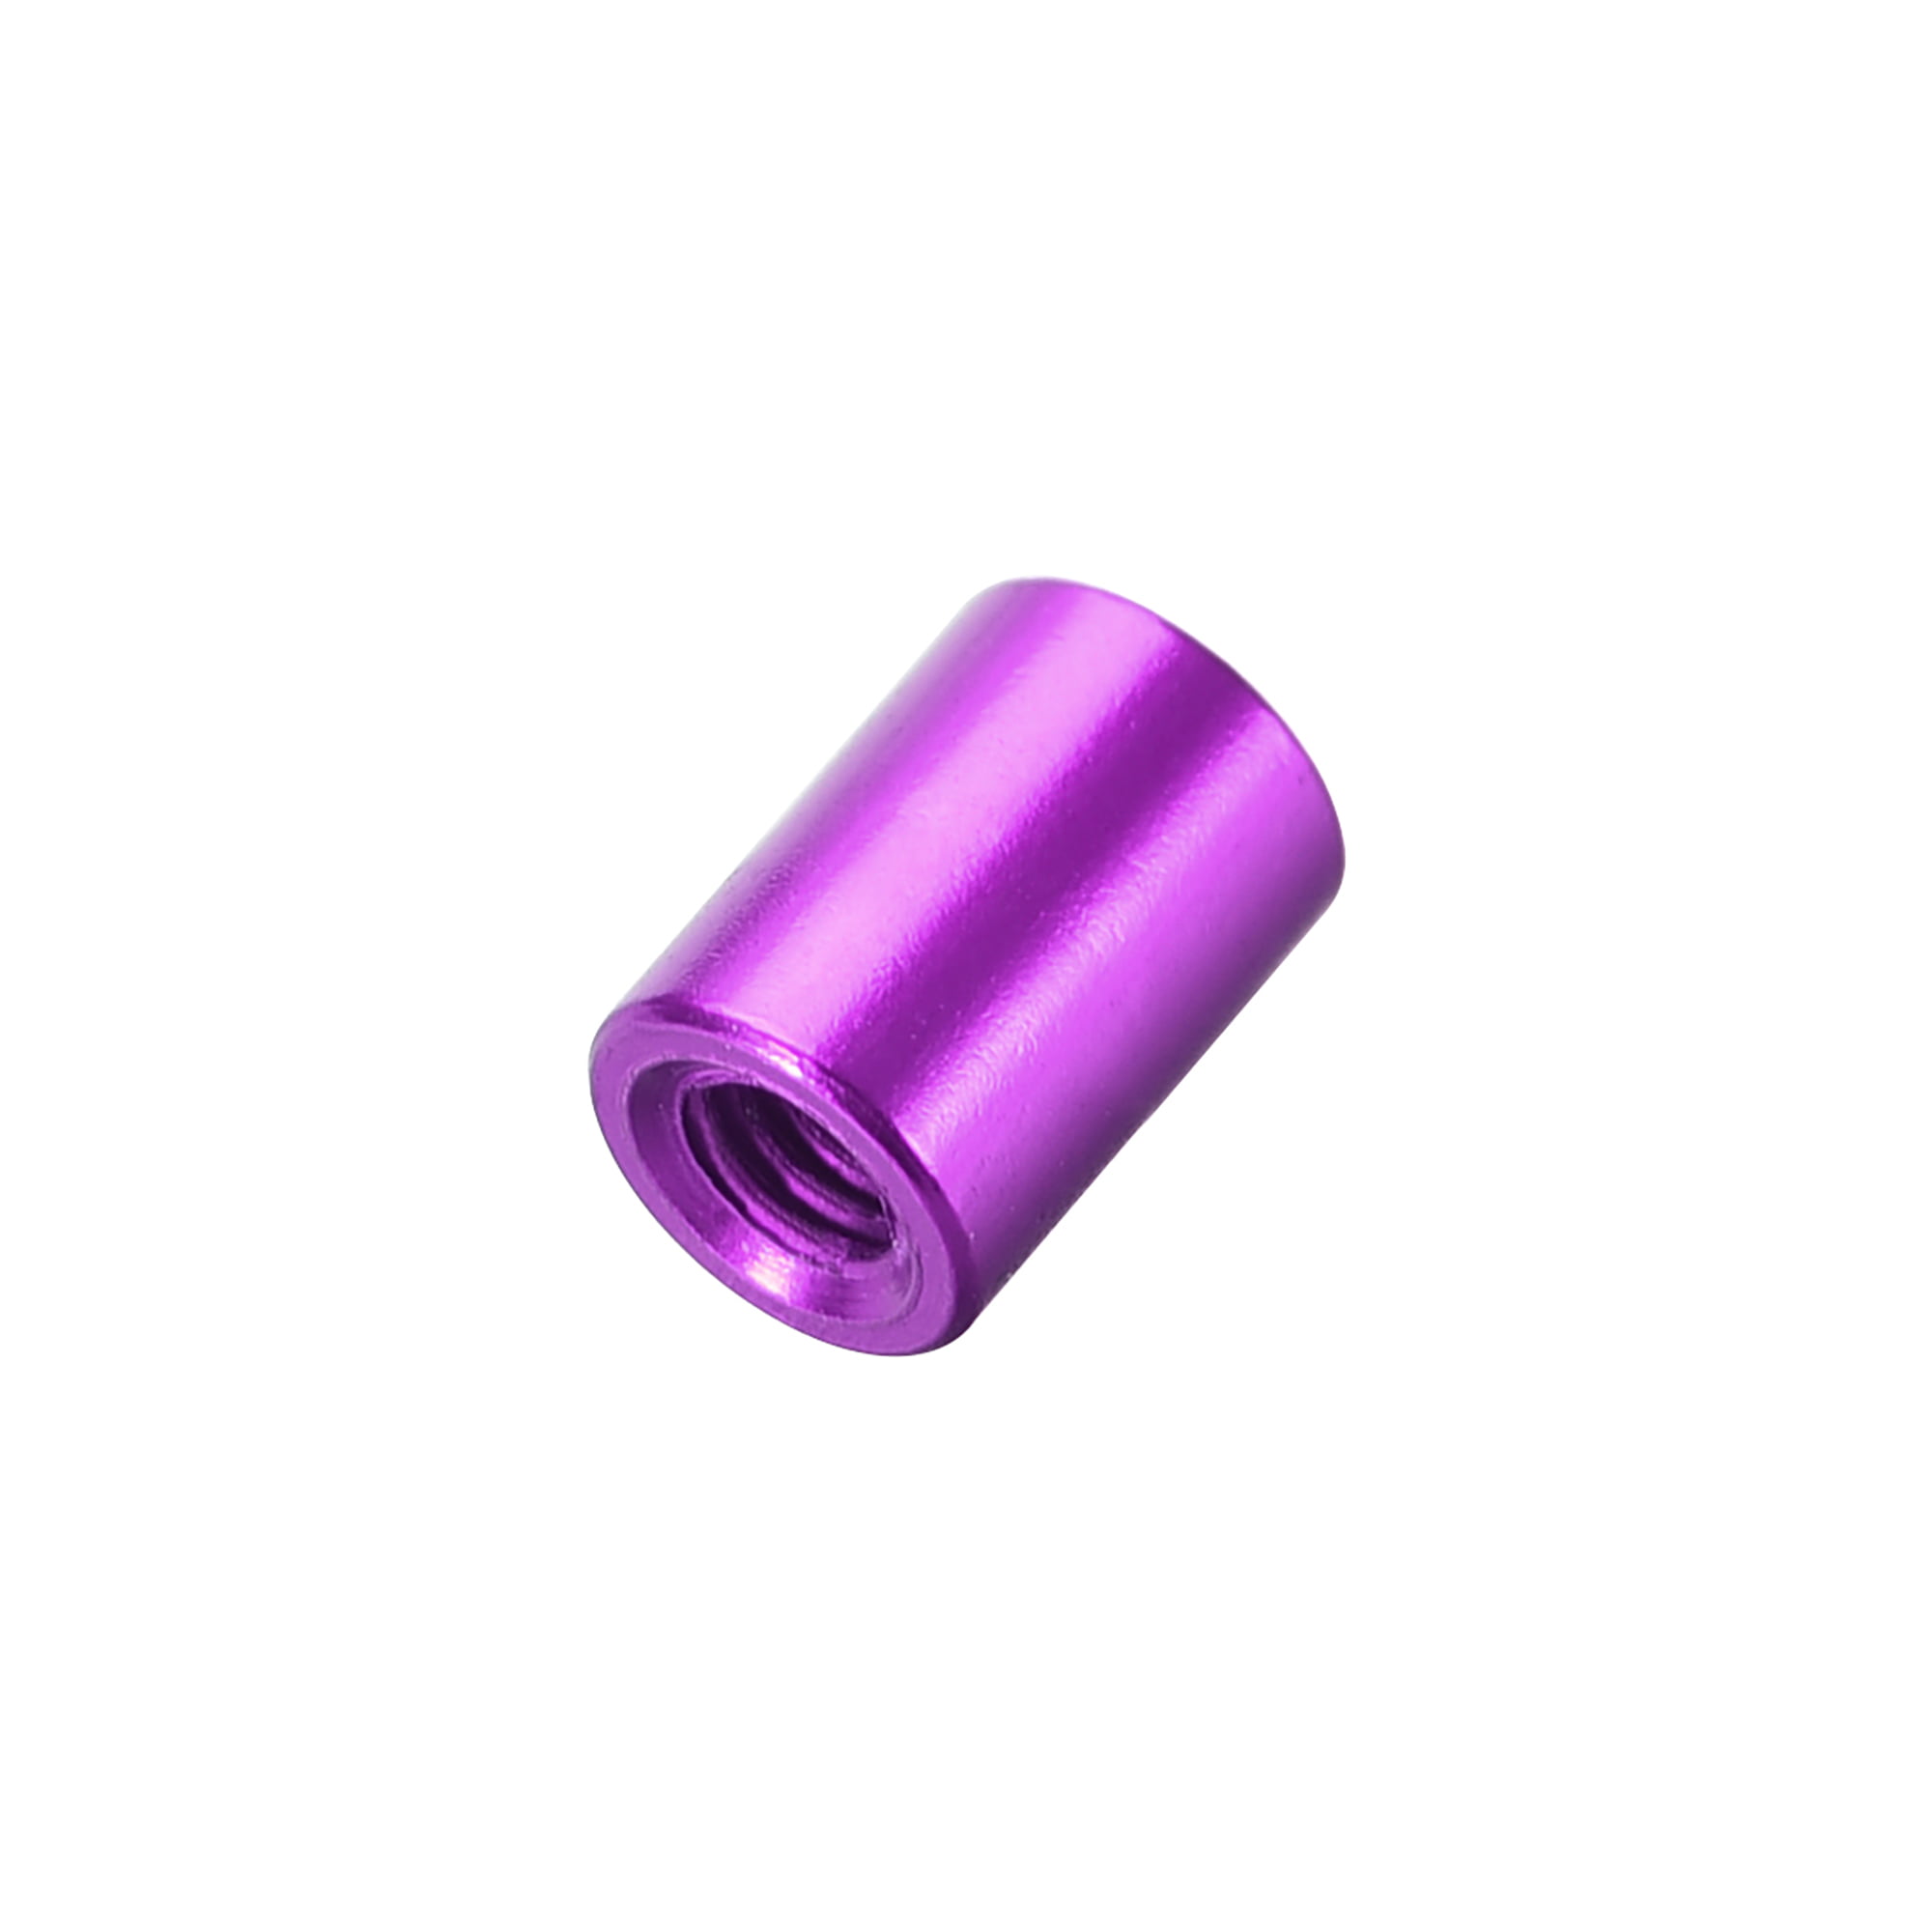 10 Pcs M3x8mm Round Aluminum Standoff Column Spacer Female Purple for DIY 